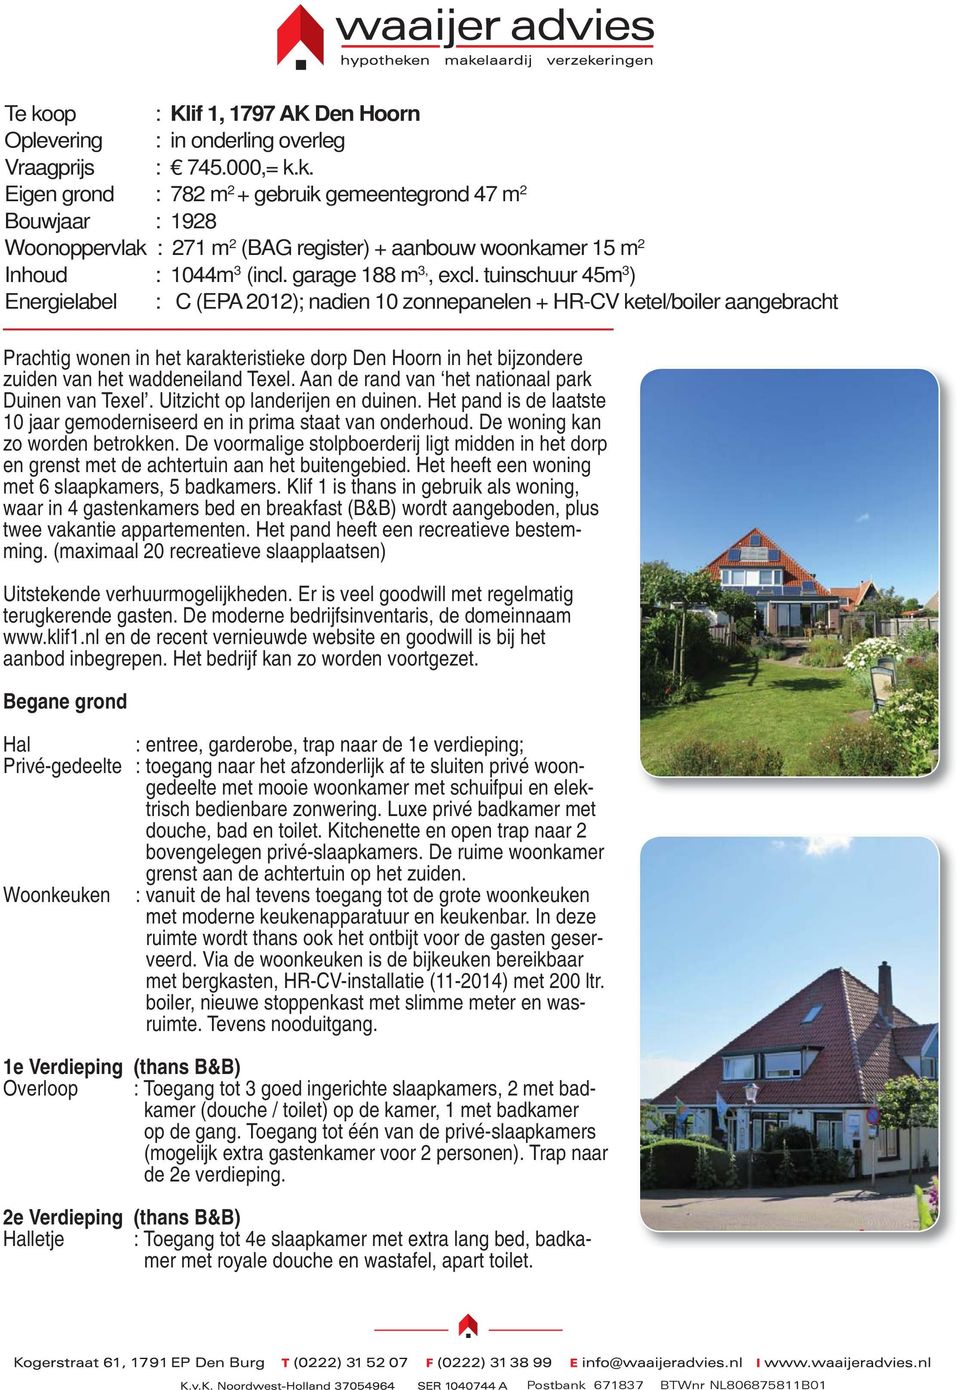 tuinschuur 45m 3 ) Energielabel : C (EPA 2012); nadien 10 zonnepanelen + HR-CV ketel/boiler aangebracht Prachtig wonen in het karakteristieke dorp Den Hoorn in het bijzondere zuiden van het